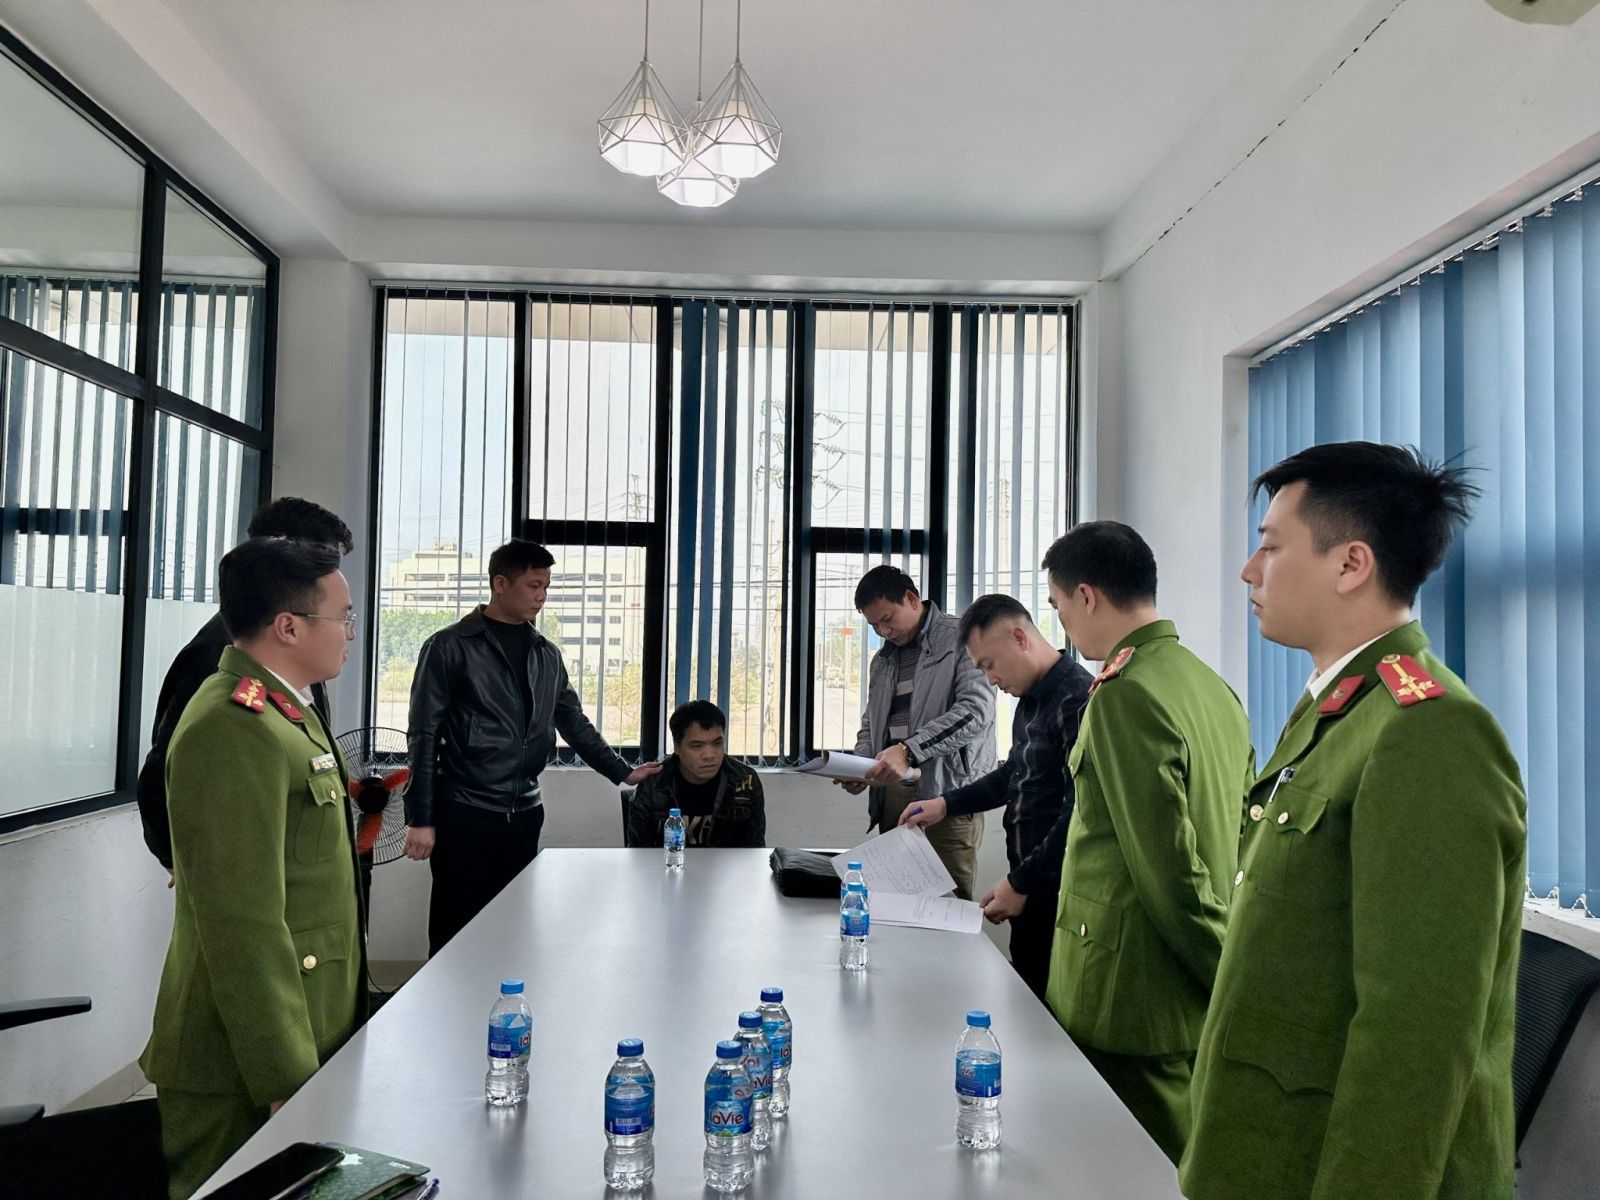 Bắc Giang: Bắt giữ đối tượng truy nã đặc biệt khi đang lẩn trốn, làm việc trong Khu công nghiệp